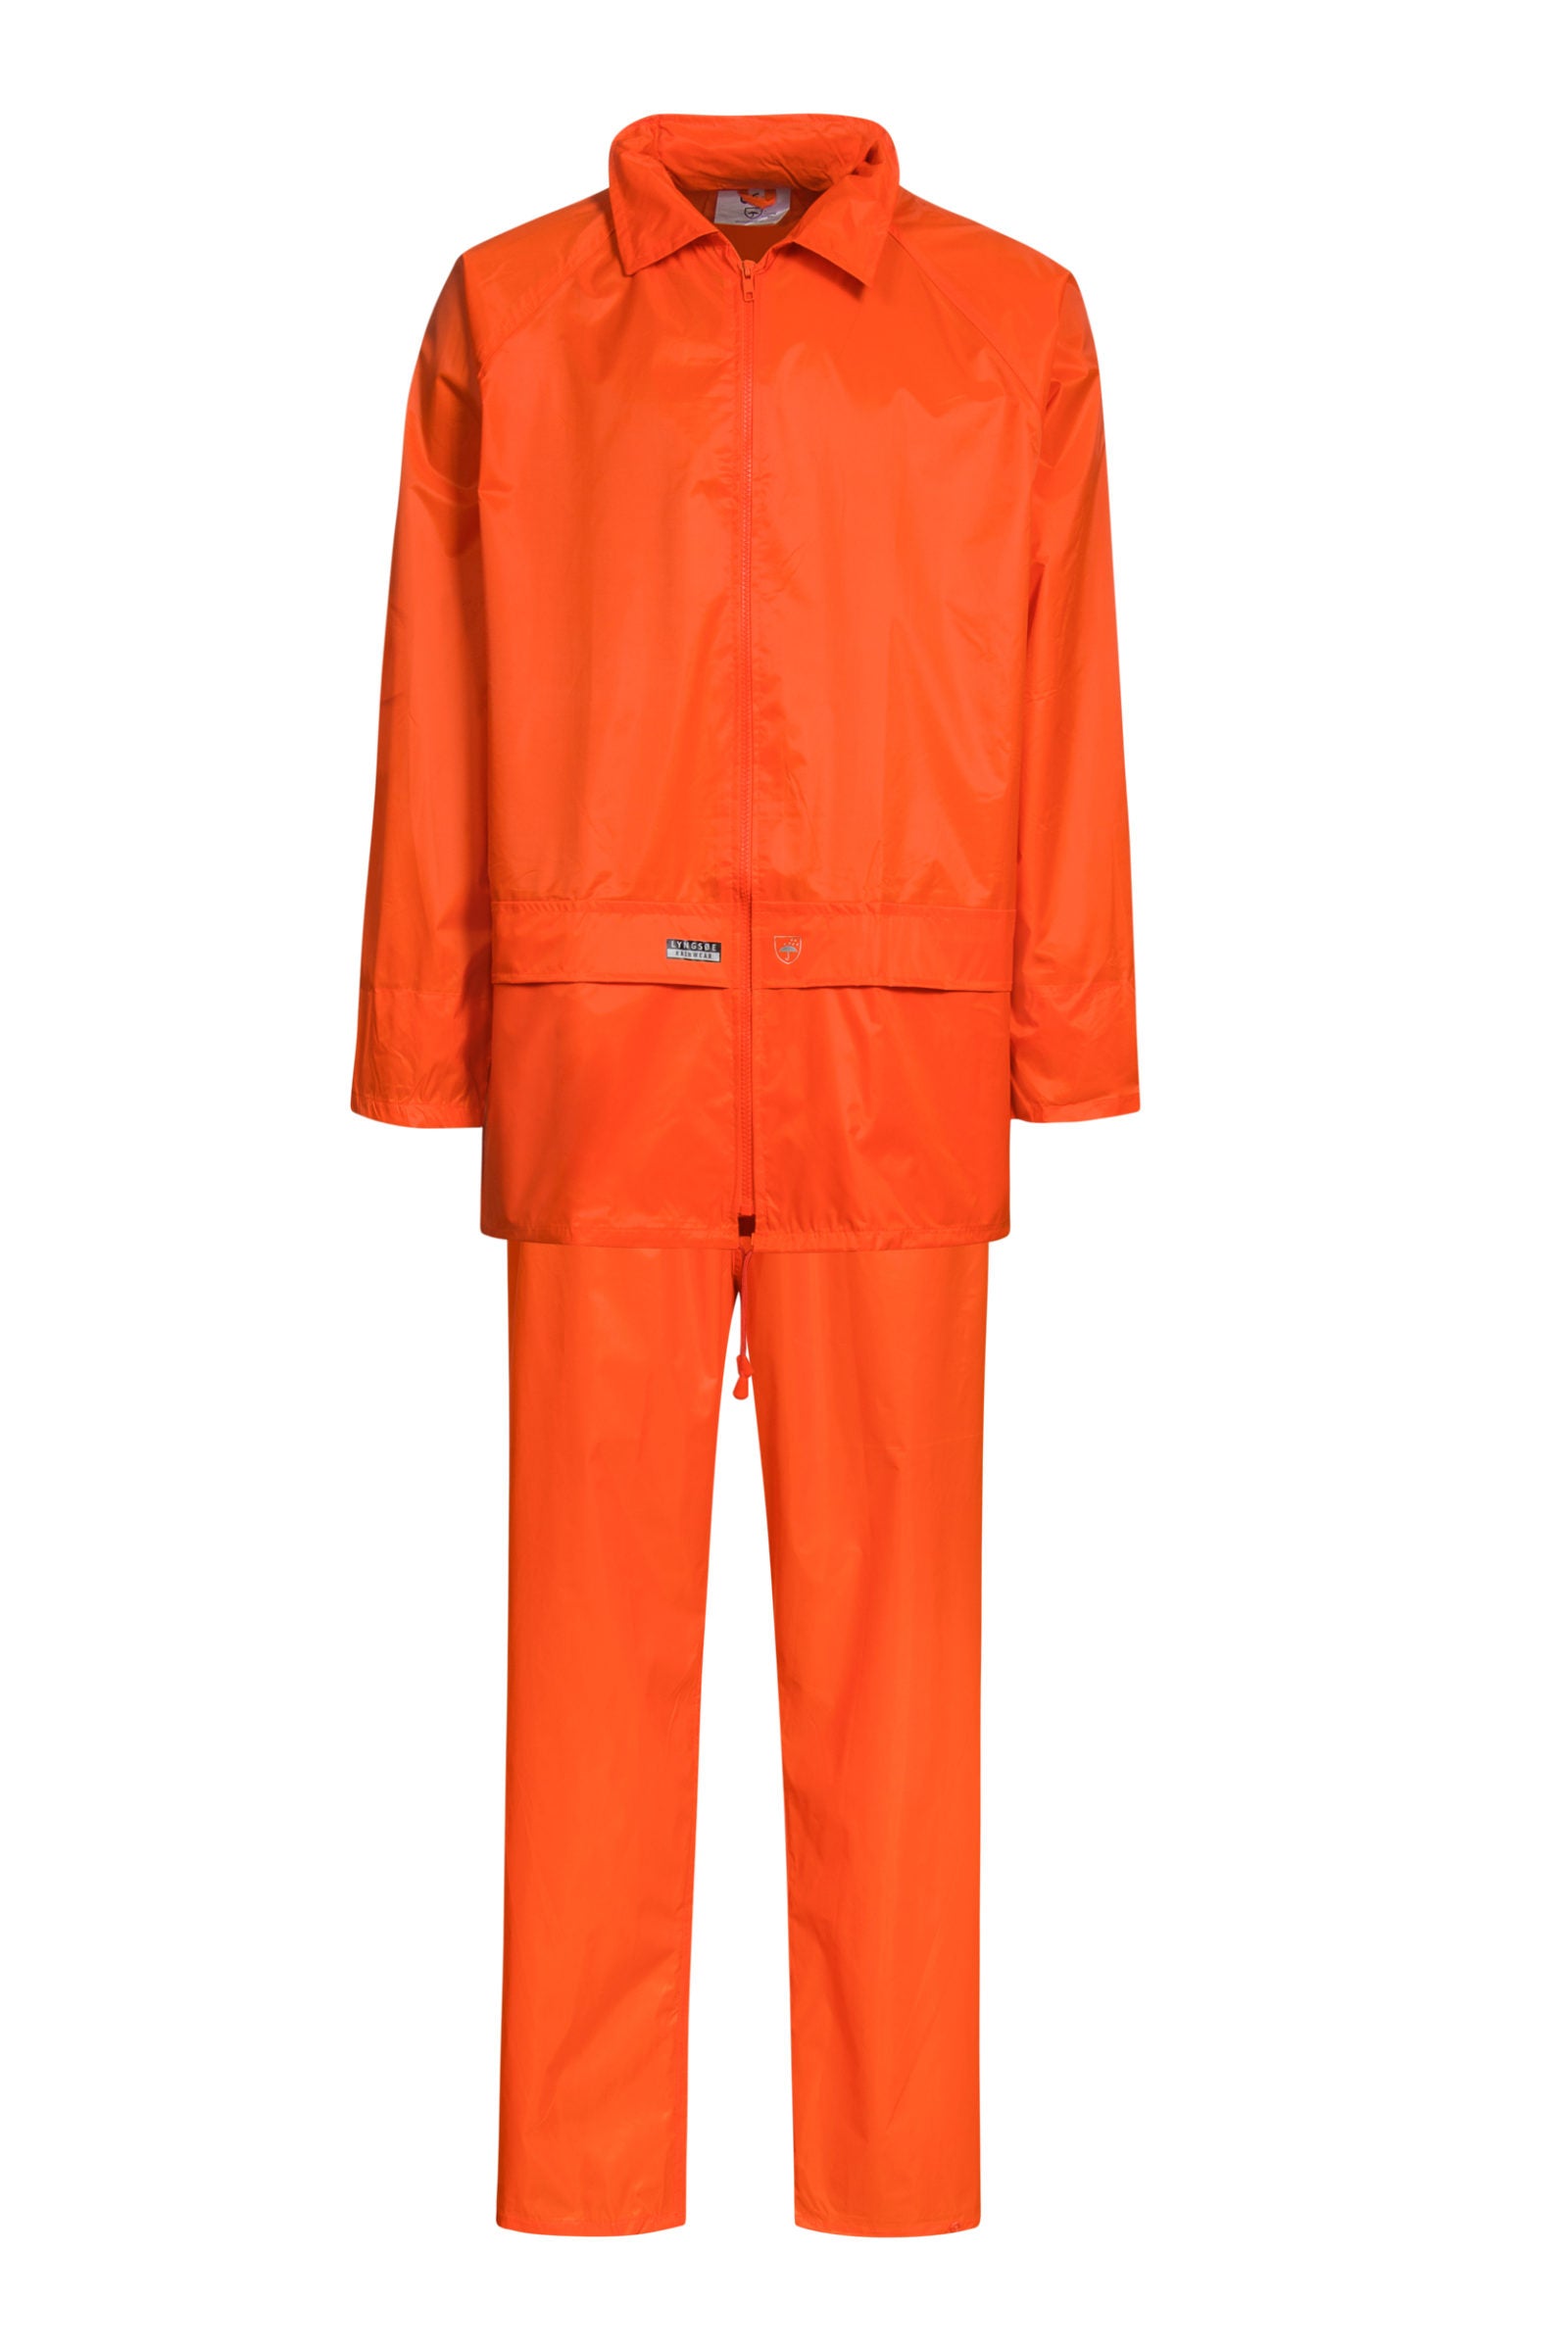 Lyngsoe Nylon Rain Suit Set - Jacket, Hood, Pants - Orange - Limited Size Selection